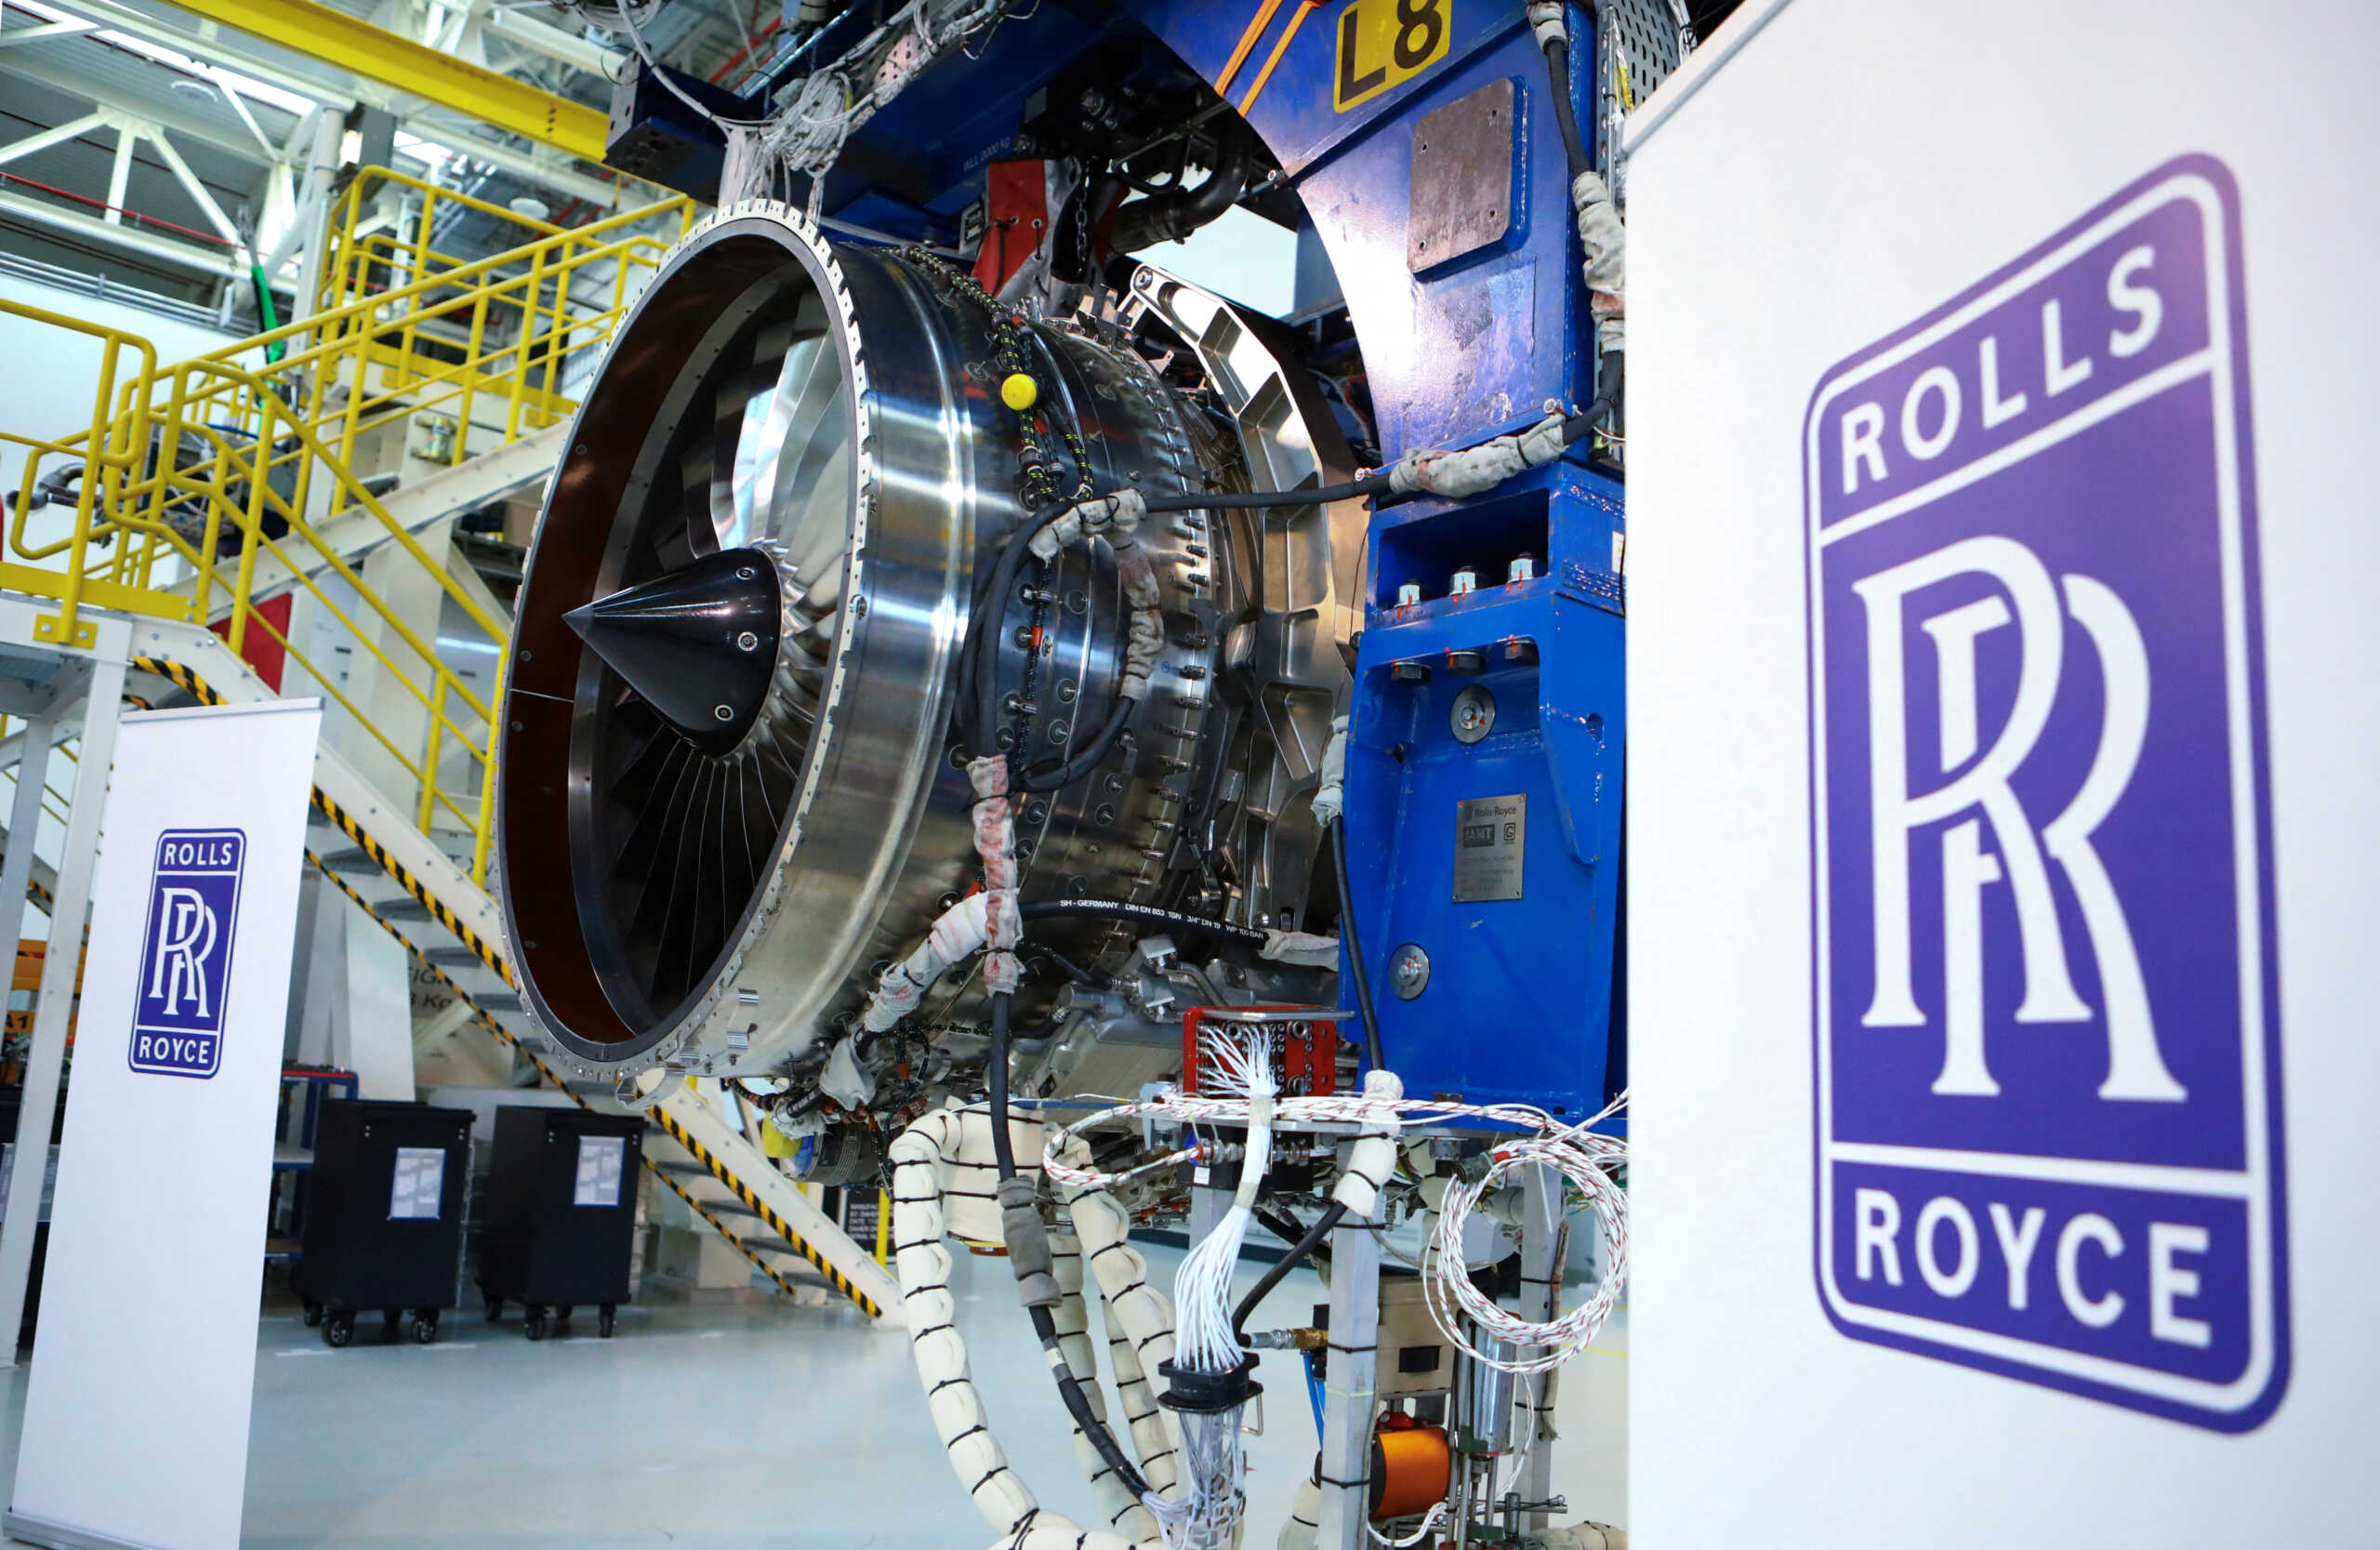 Βρετανία: Η Rolls Royce αναπτύσσει έναν πυρηνικό αντιδραστήρα για μελλοντικές βάσεις στη Σελήνη